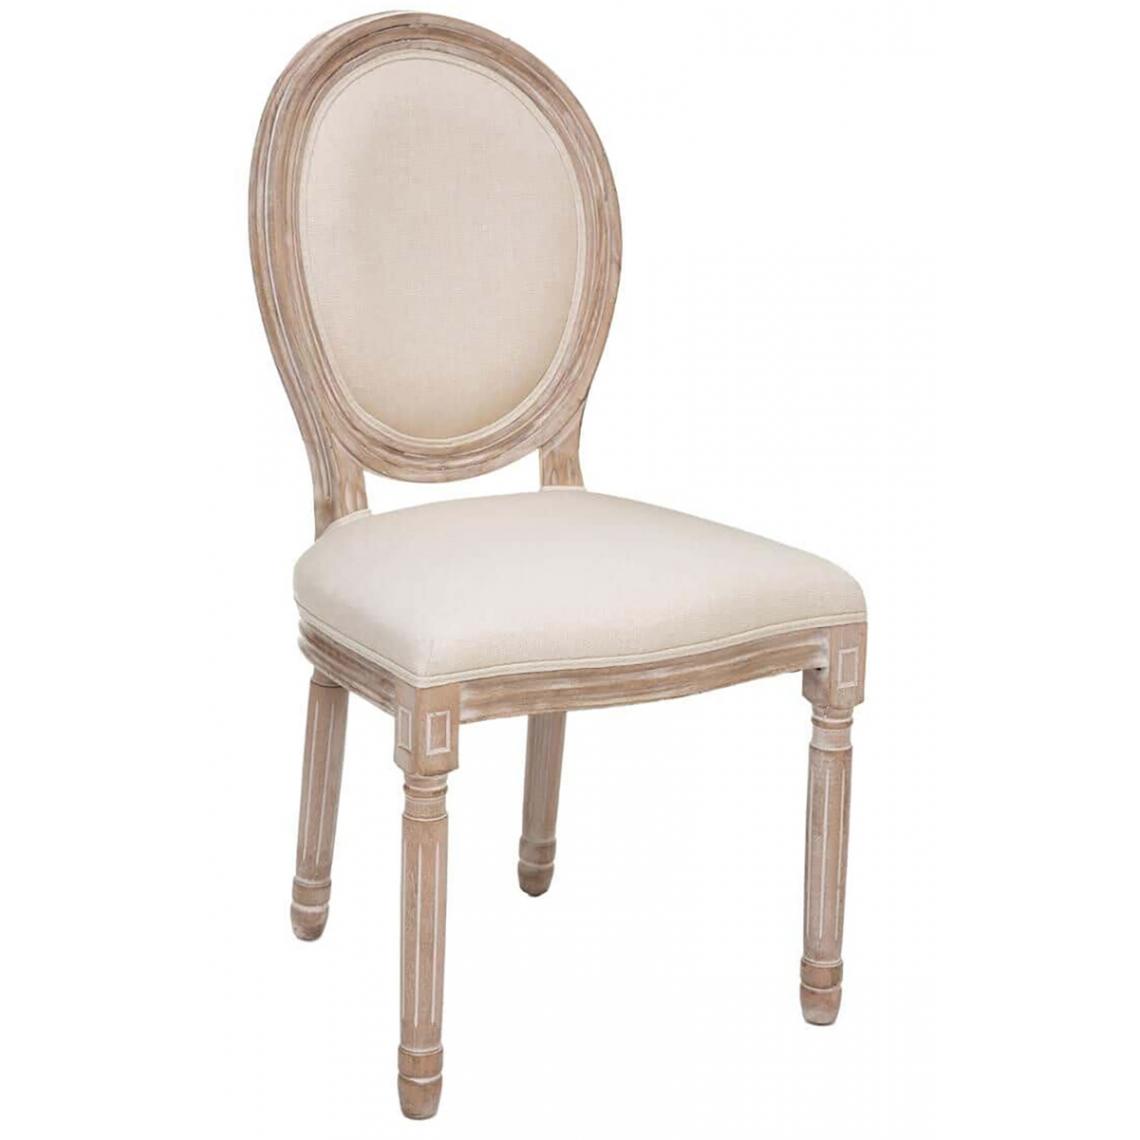 Pegane - Lot de 2 chaises coloris beige lin - Longueur 49 x Profondeur 56 x Hauteur 96 cm - Chaises